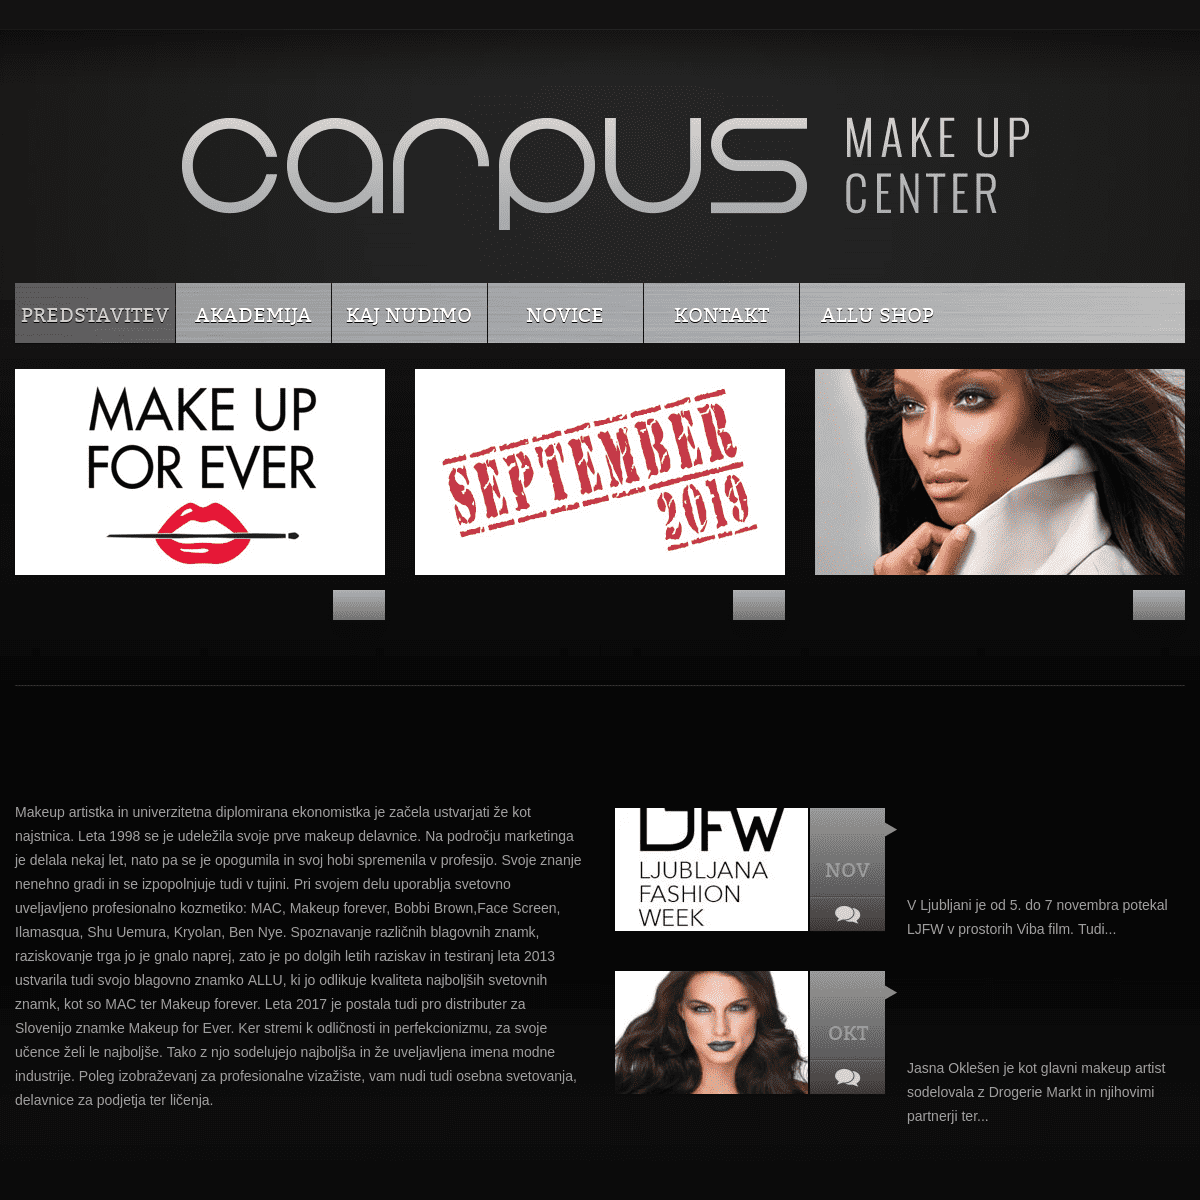 Carpus makeup center | 